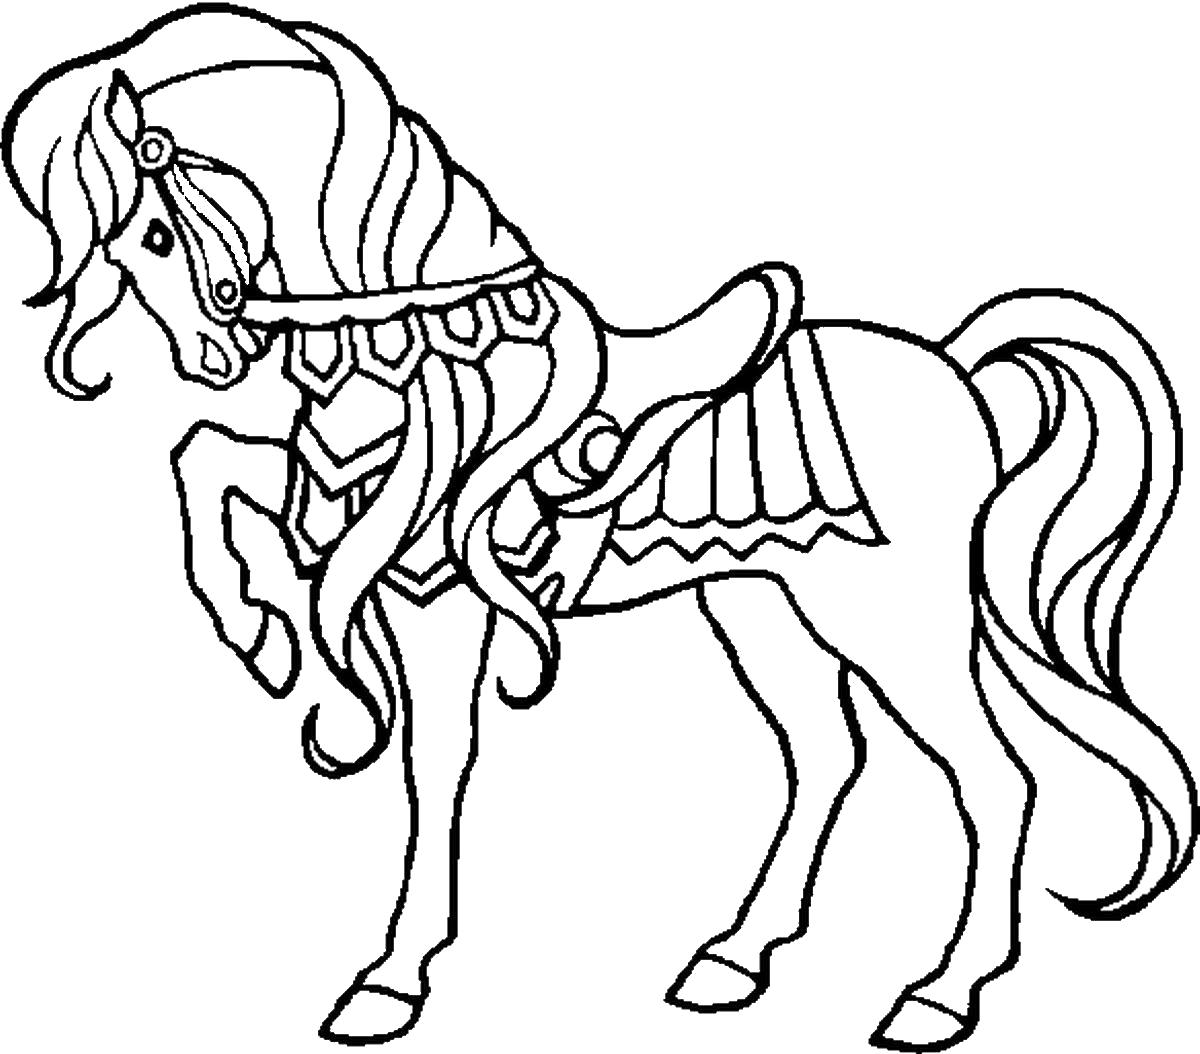 Раскраска Цирковая лошадка. Домашние животные